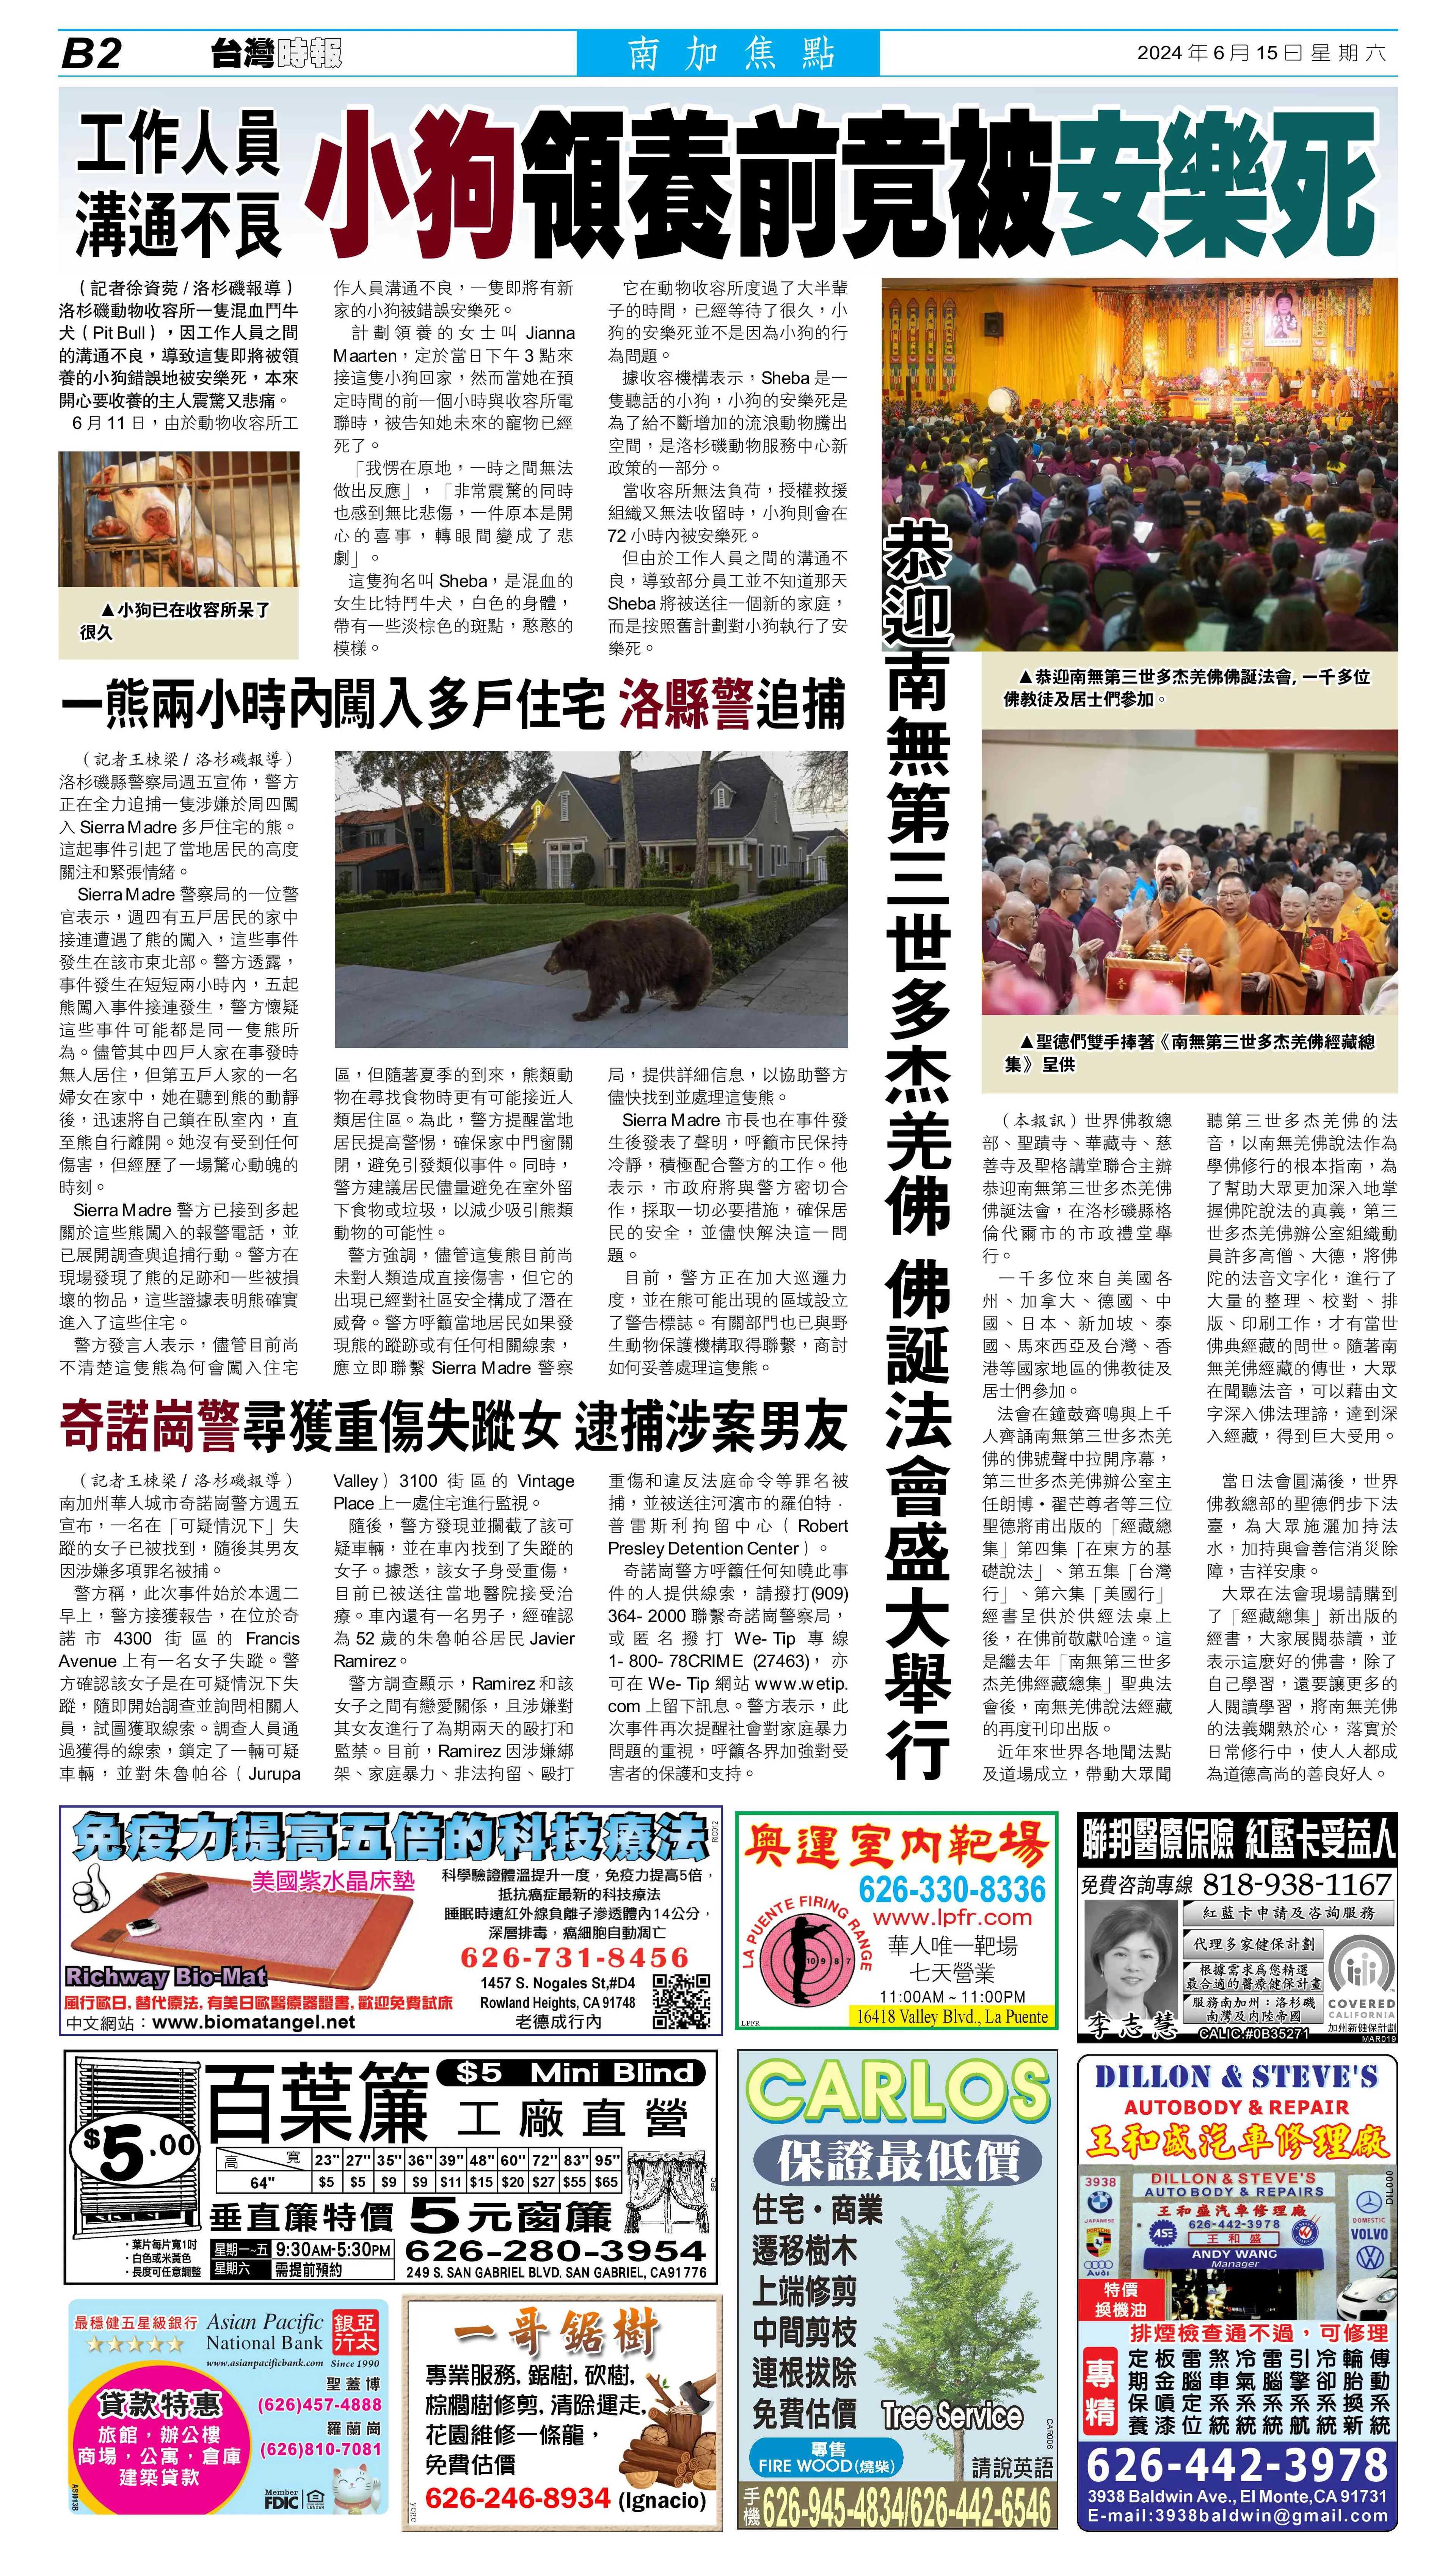 《台灣時報》p18：2024 年 6 月 15 日：恭迎南無第三世多杰羌佛佛誕法會盛大舉行